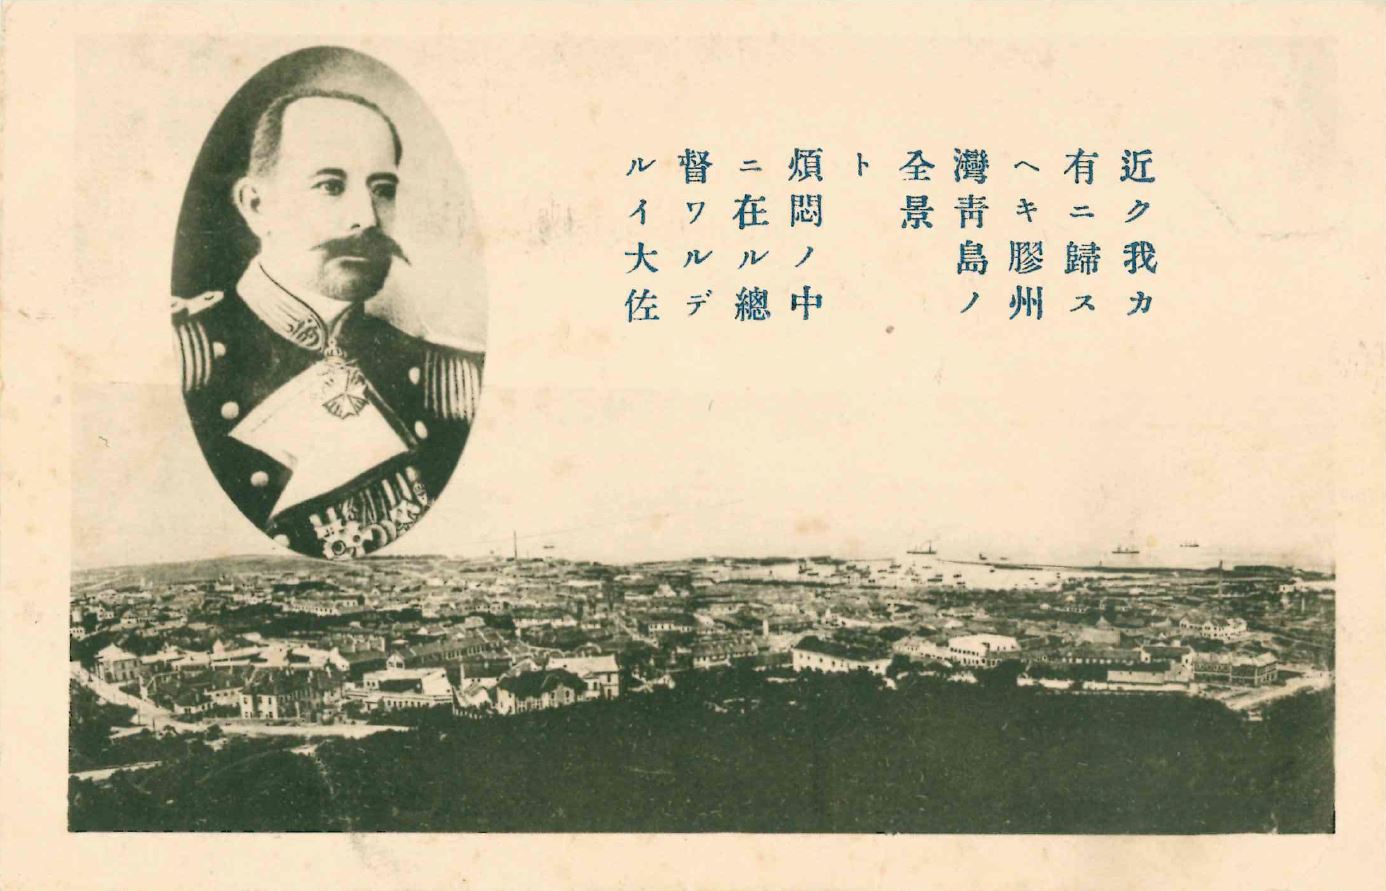 Das Bild zeigt eine Postkarte aus Qingdao, die über den Sieg der Japaner berichtet. Am unteren Rand des Bildes liegt die Stadt Qingdao mit ihren europäisch anmutenden Bauten. Darüber steht ein japanischer Text und links daneben ist ein Abbild von Kapitän Alfred Meyer-Waldeck in einem Oval. 